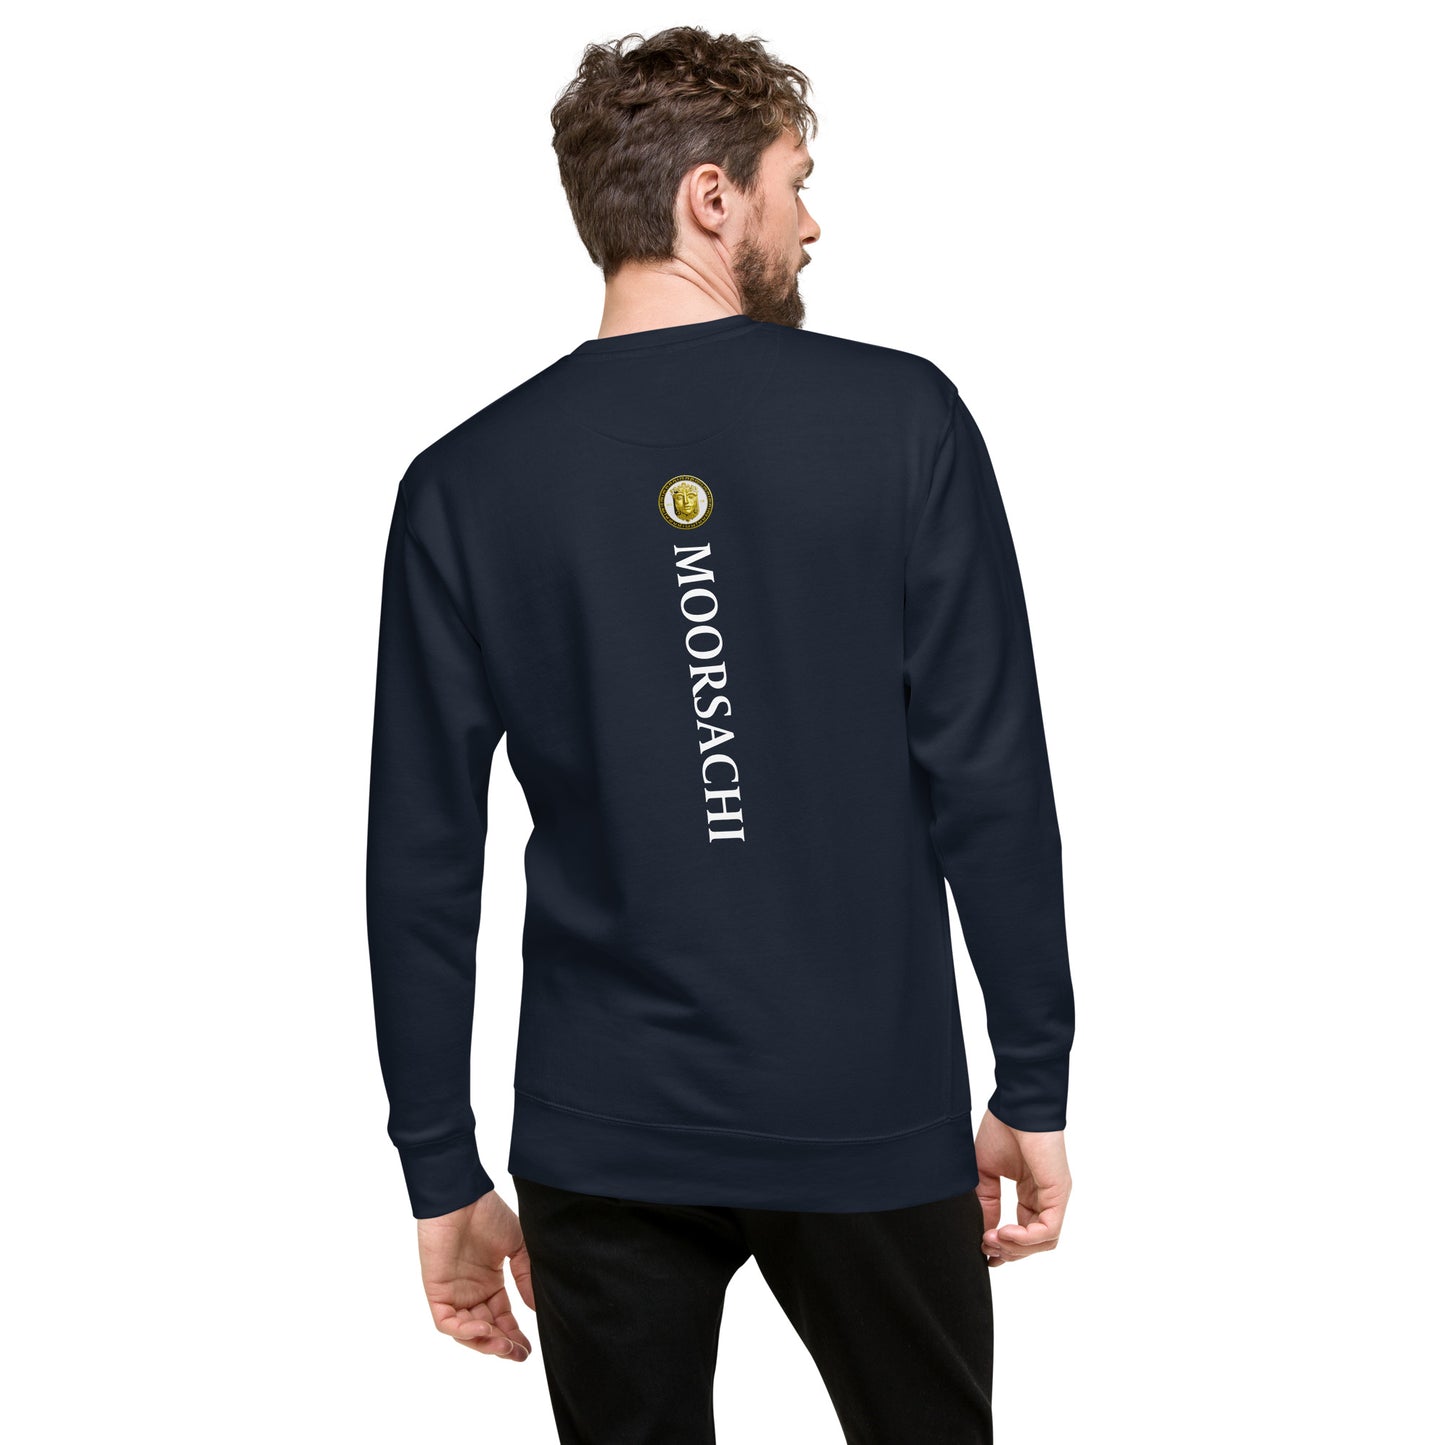 MOORSACHI BERG PANDA II - Unisex Premium Sweatshirt